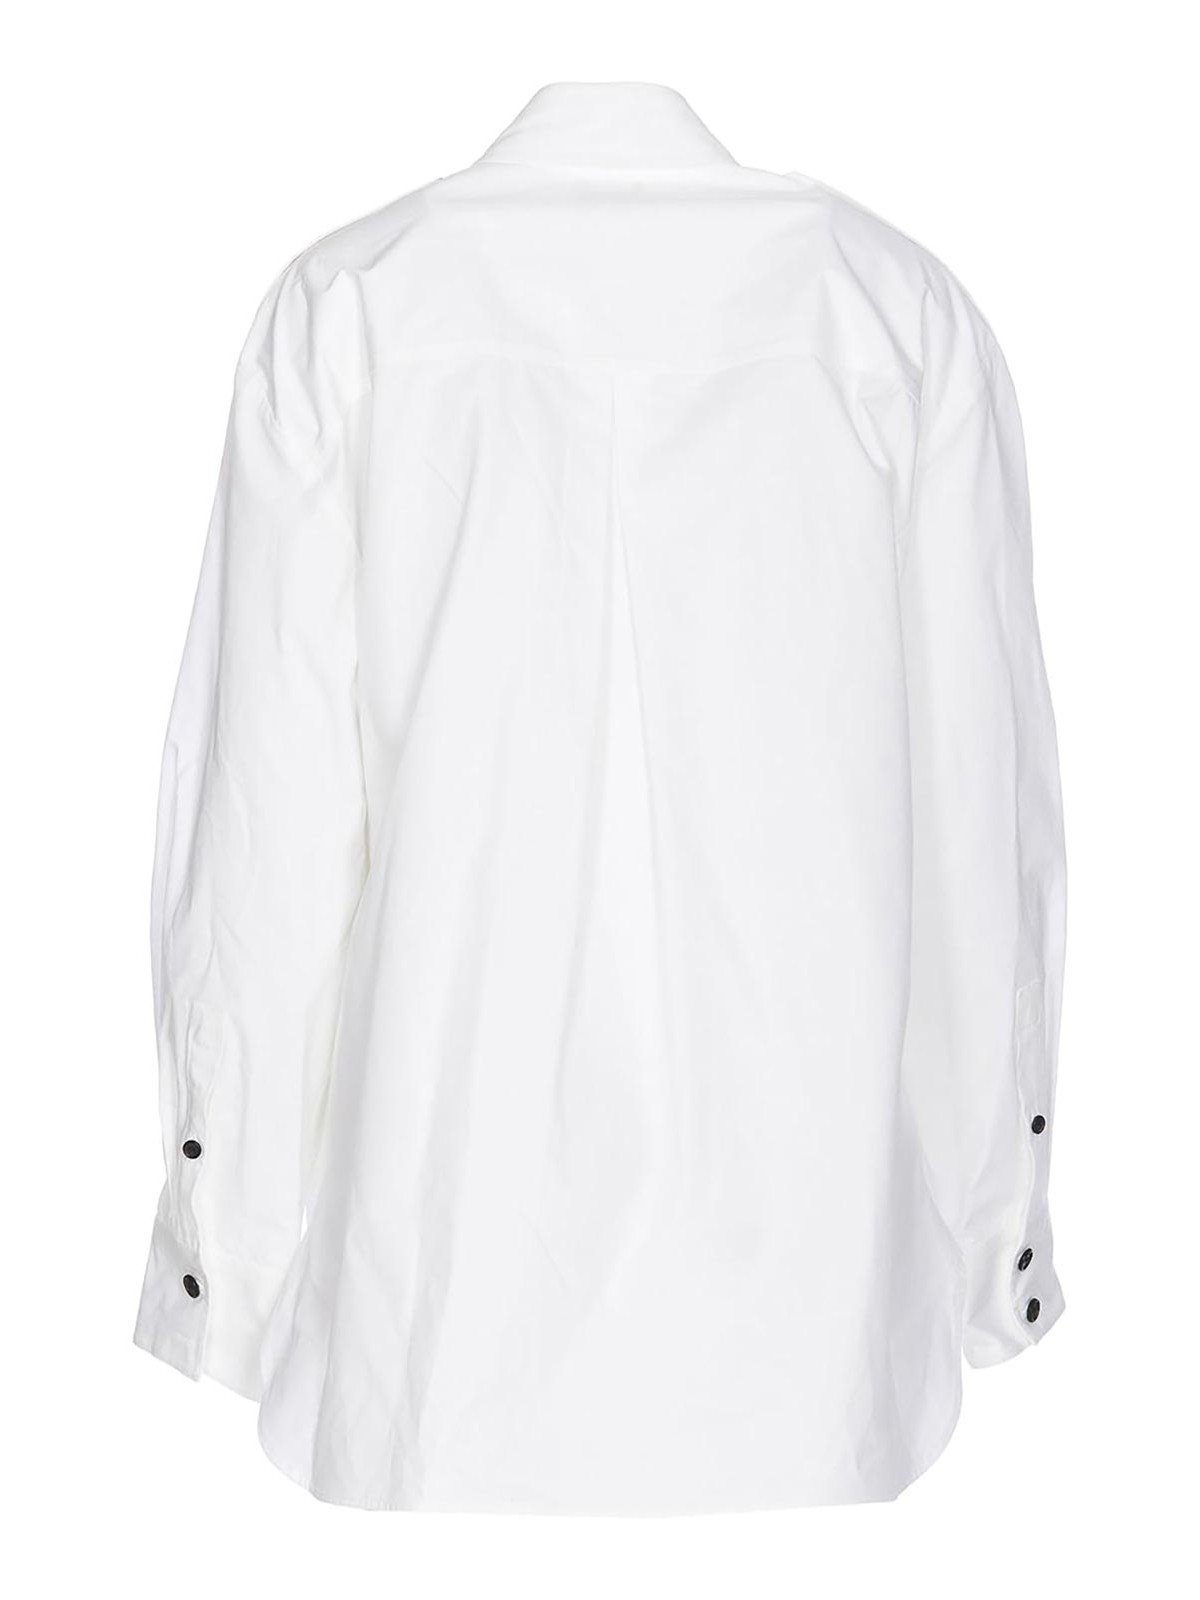 Shop Khaite Missa Shirt White Frontal Button